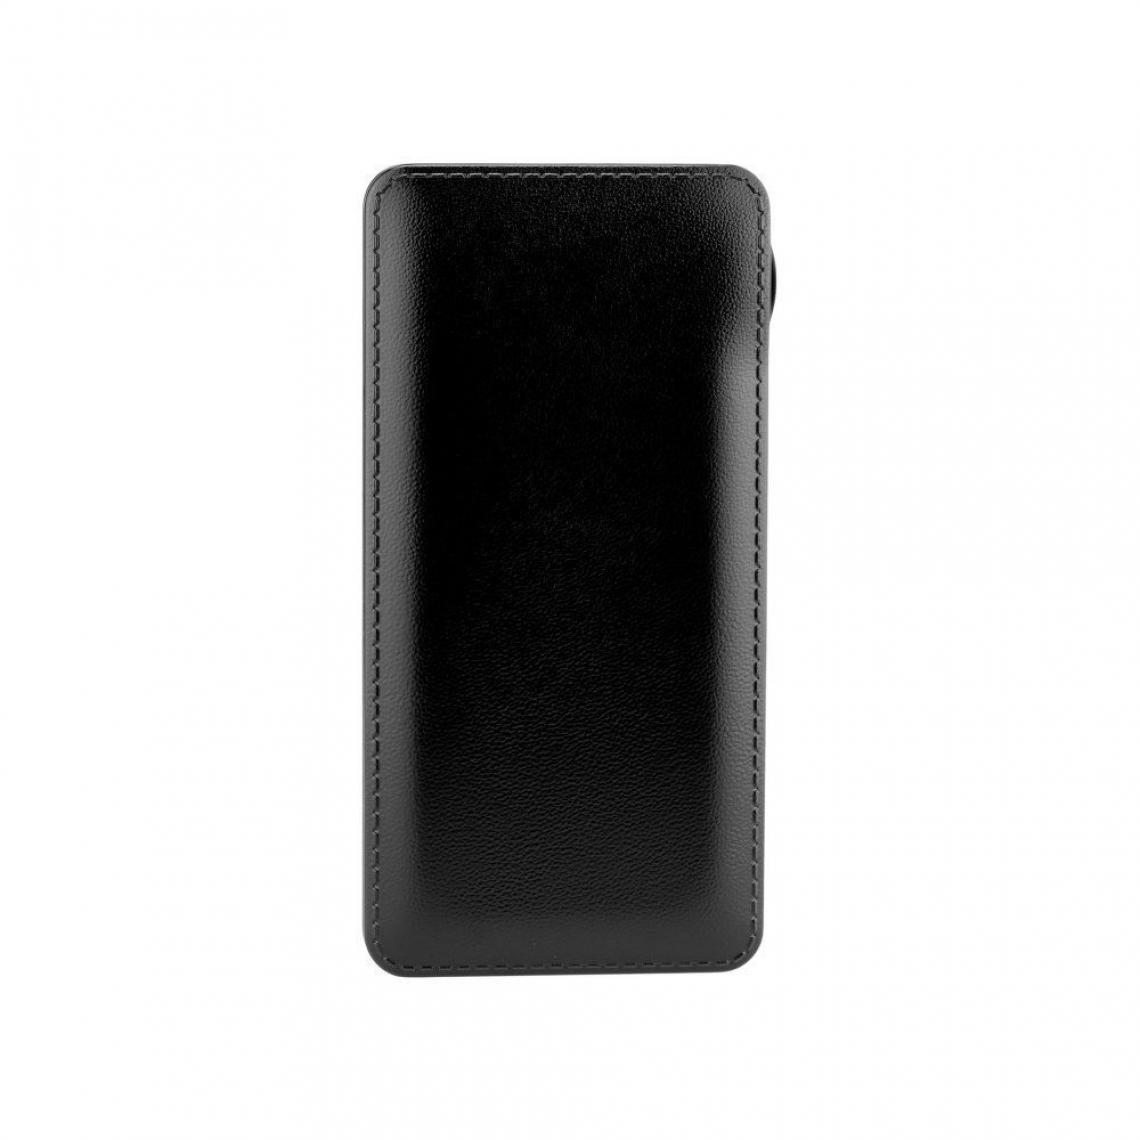 Ozzzo - Chargeur batterie externe 20000 mAh powerbank ozzzo noir pour LG K8 2018 - Autres accessoires smartphone